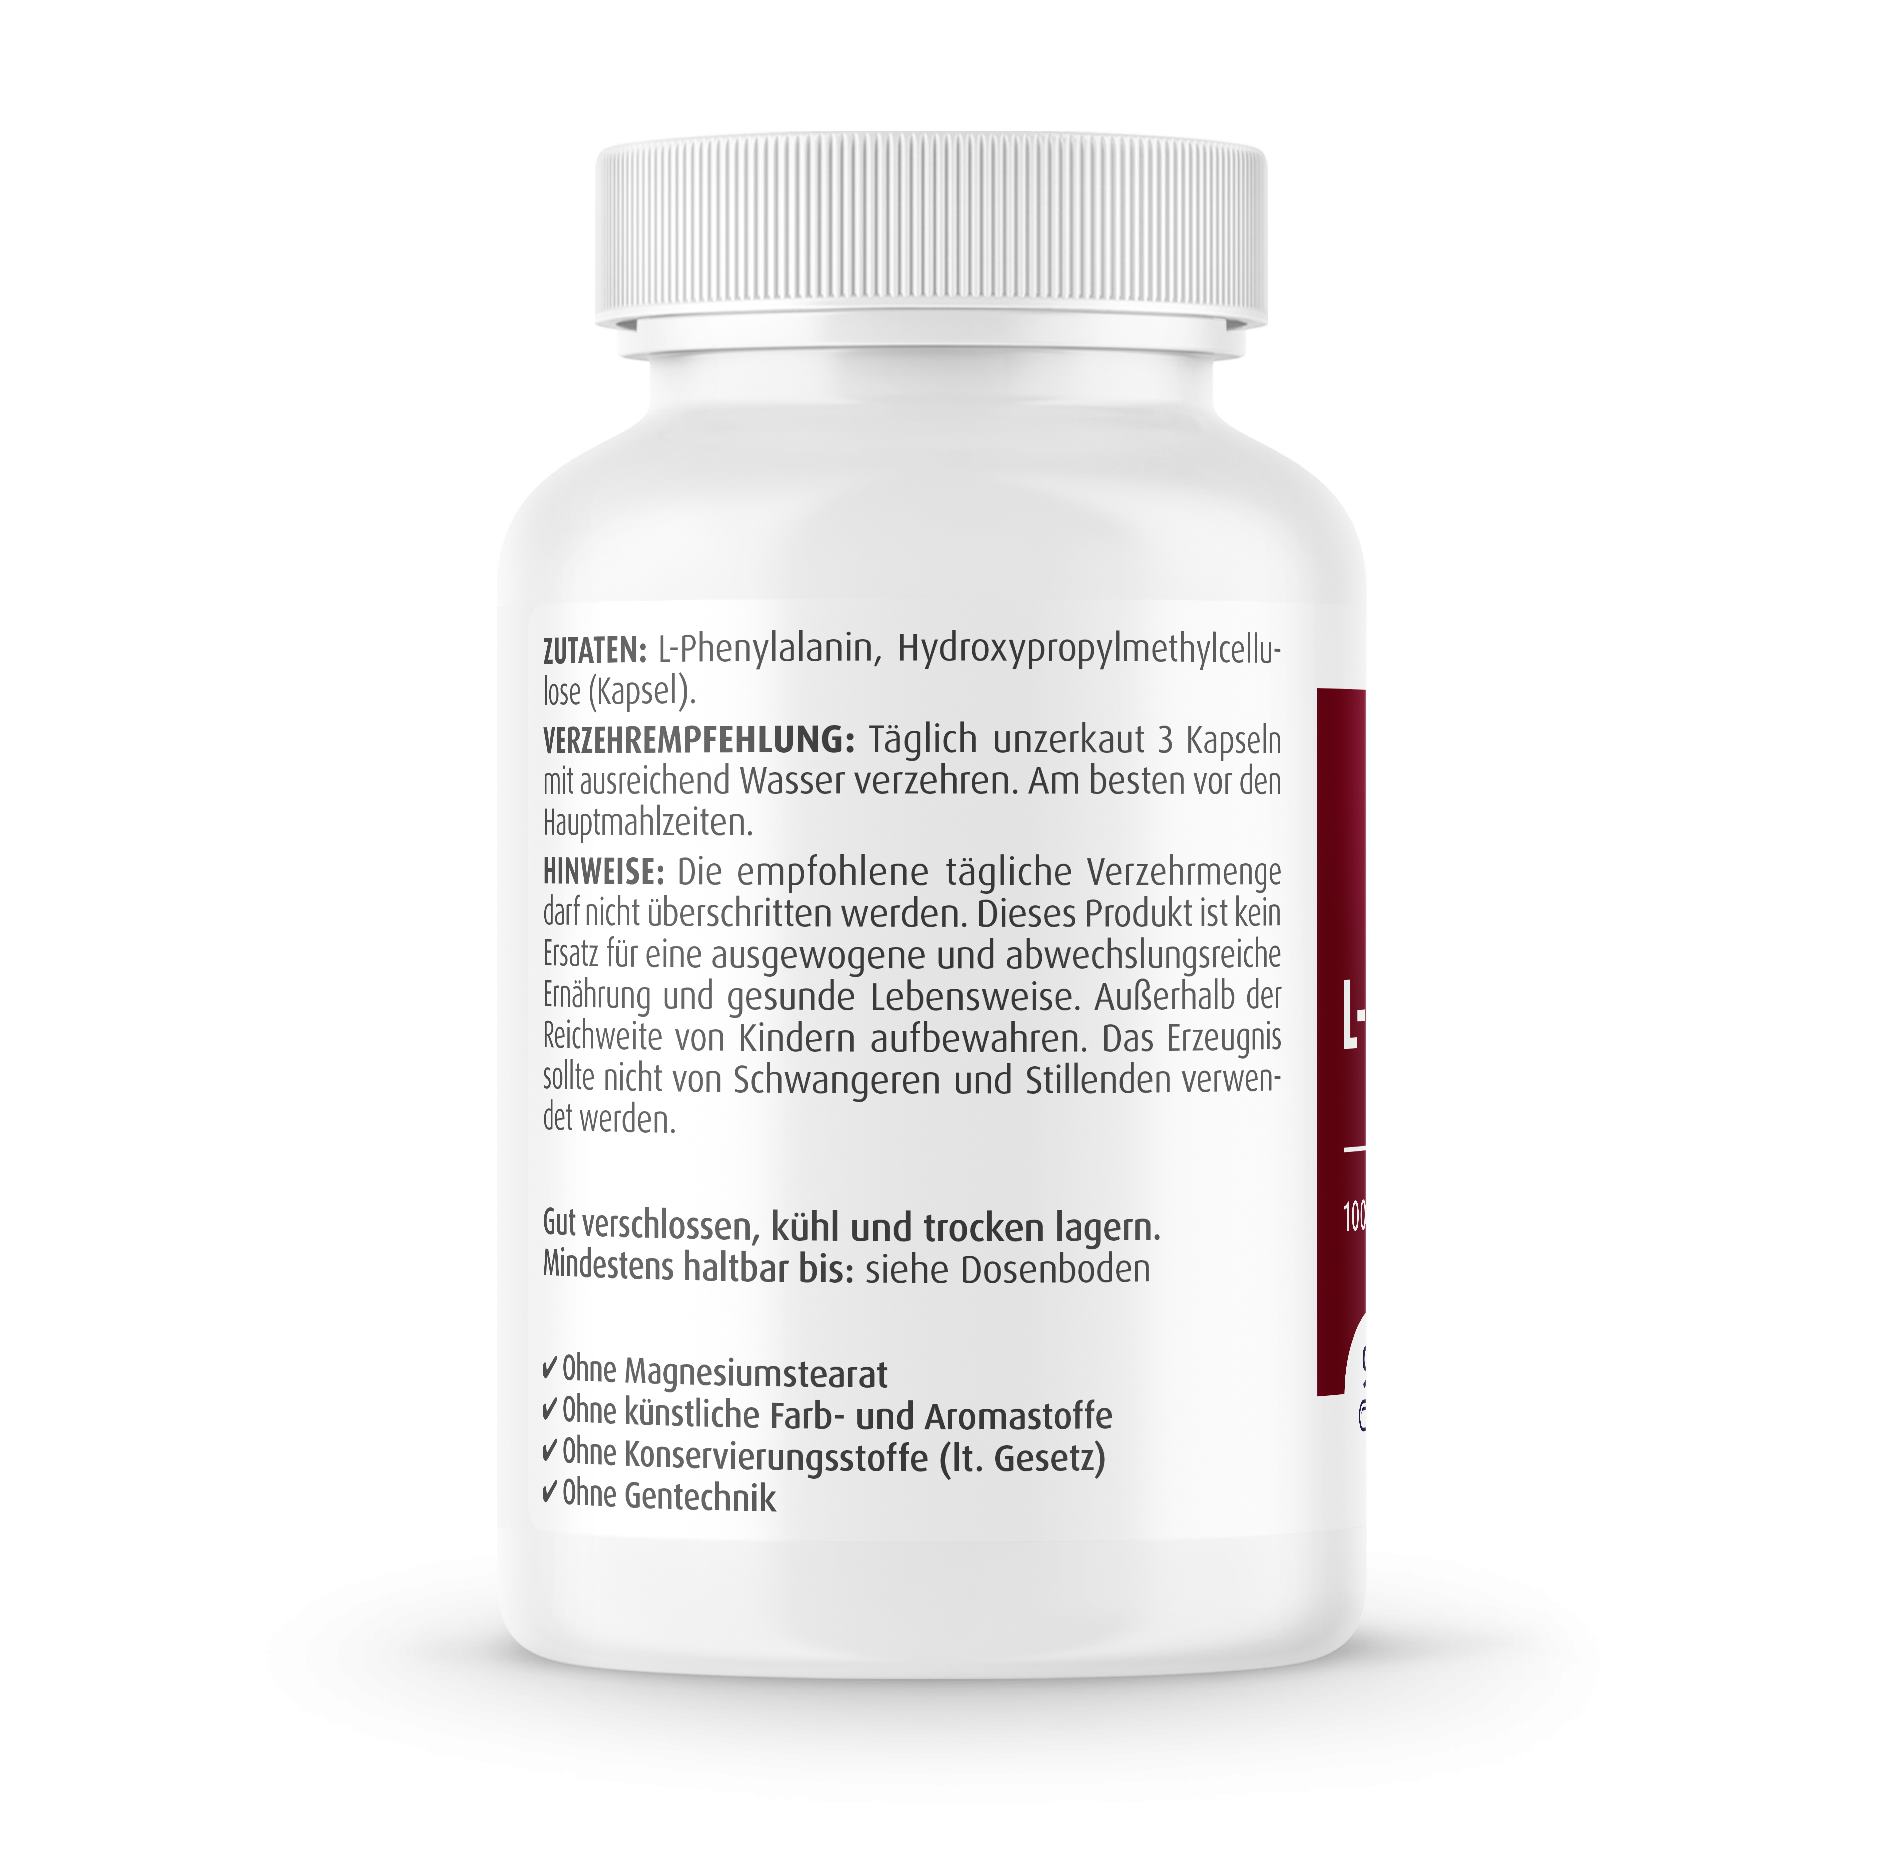 L-Phenylalanin 500 mg - 90 Kapseln